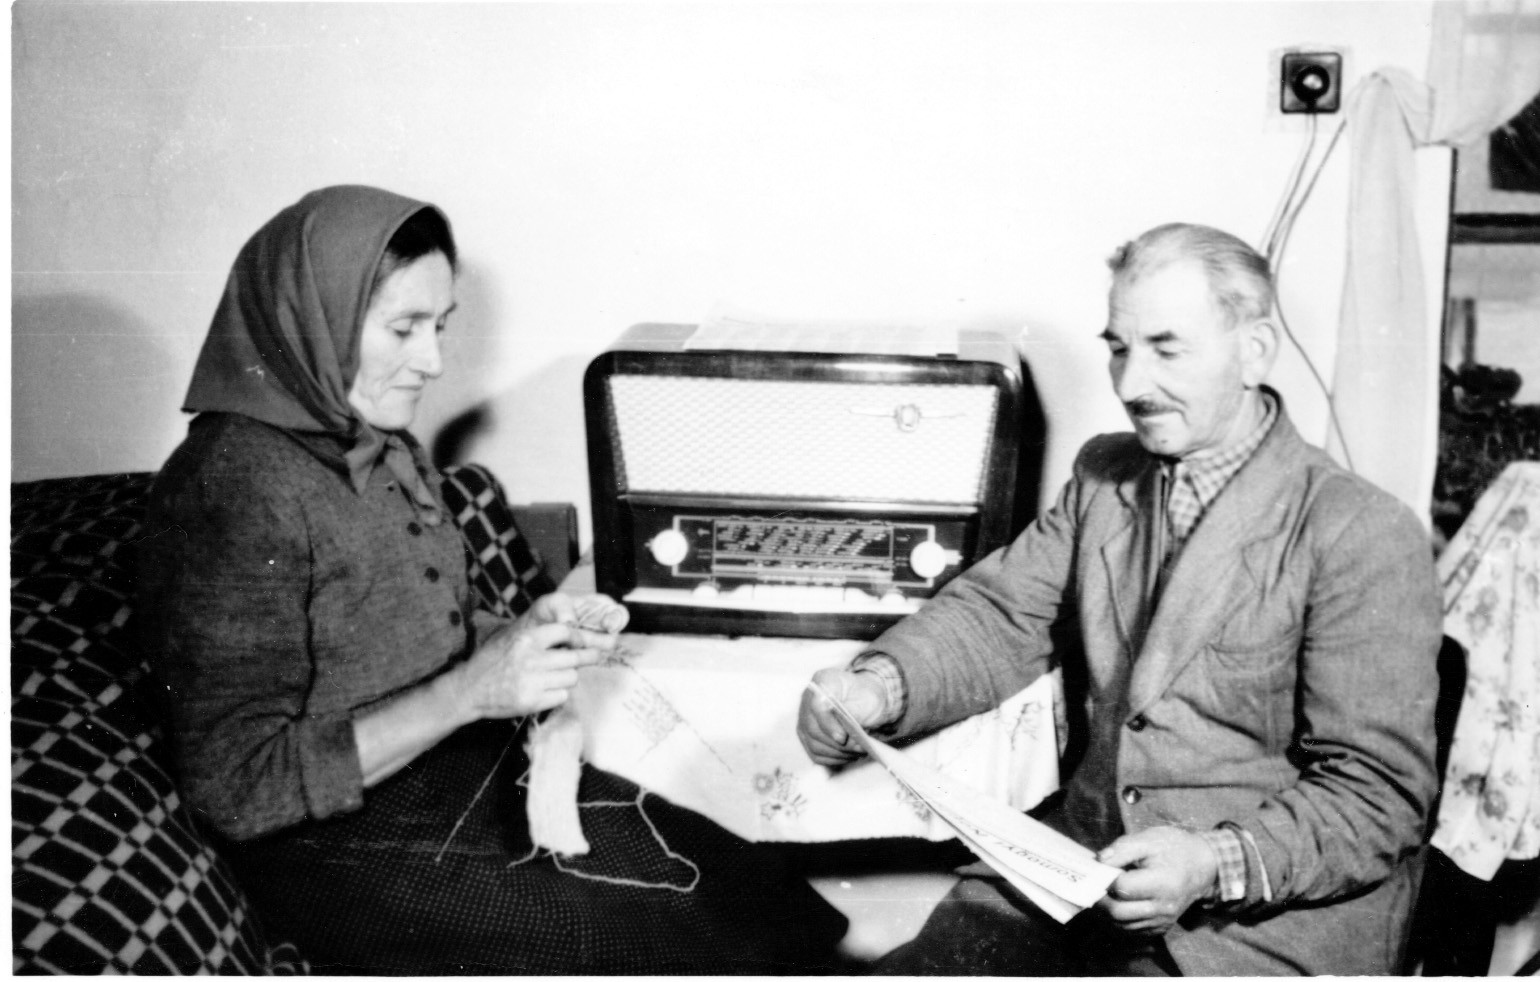 Horváth József és felesége, libickoznai tsz-tagok az asztali rádió mellett ülve. A nő kézimunkázik, a férfi Somogyi Néplapot olvas. (Rippl-Rónai Múzeum CC BY-NC-SA)